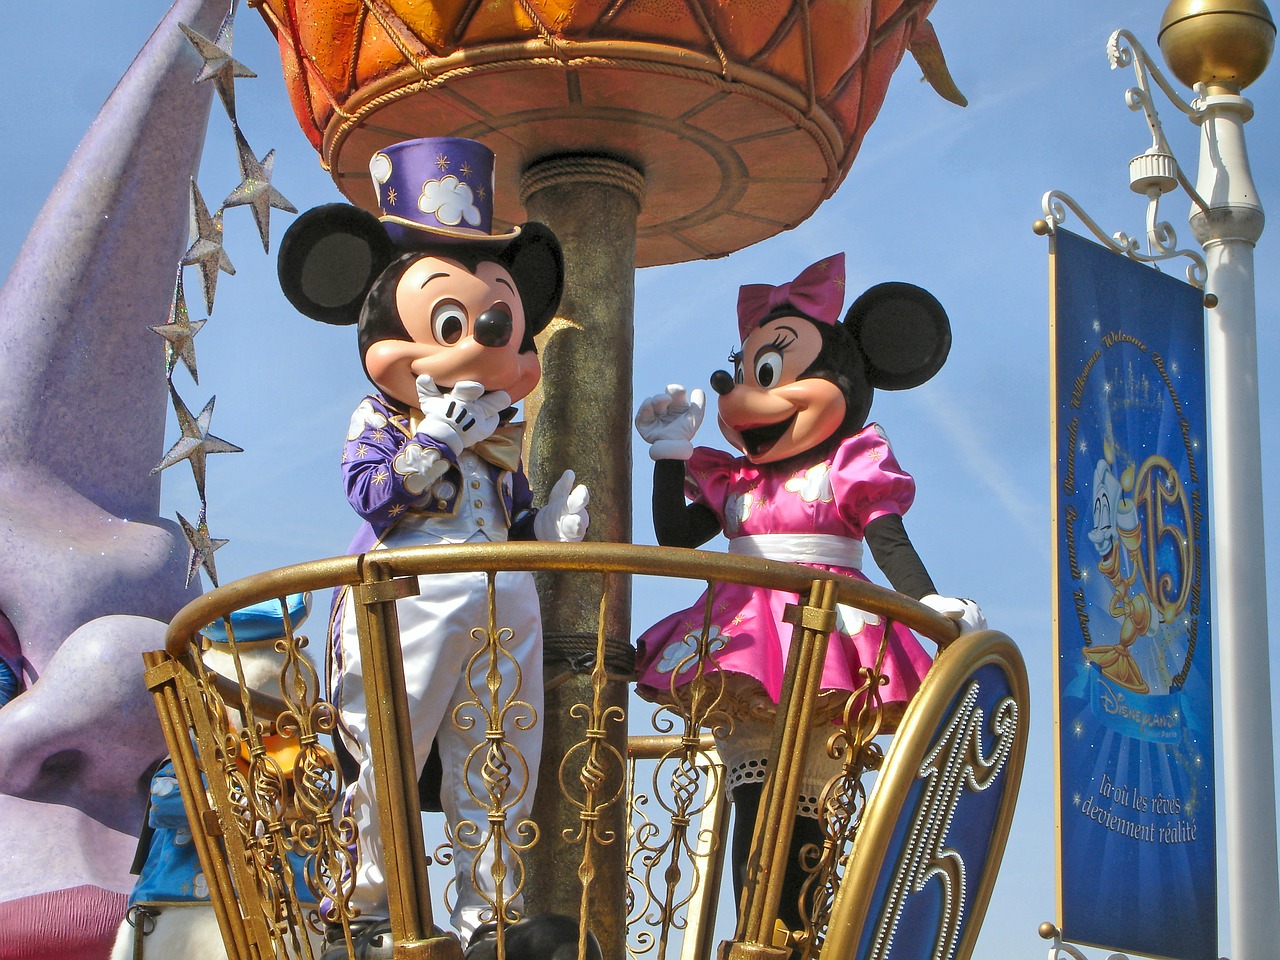 Disneyland characters parade